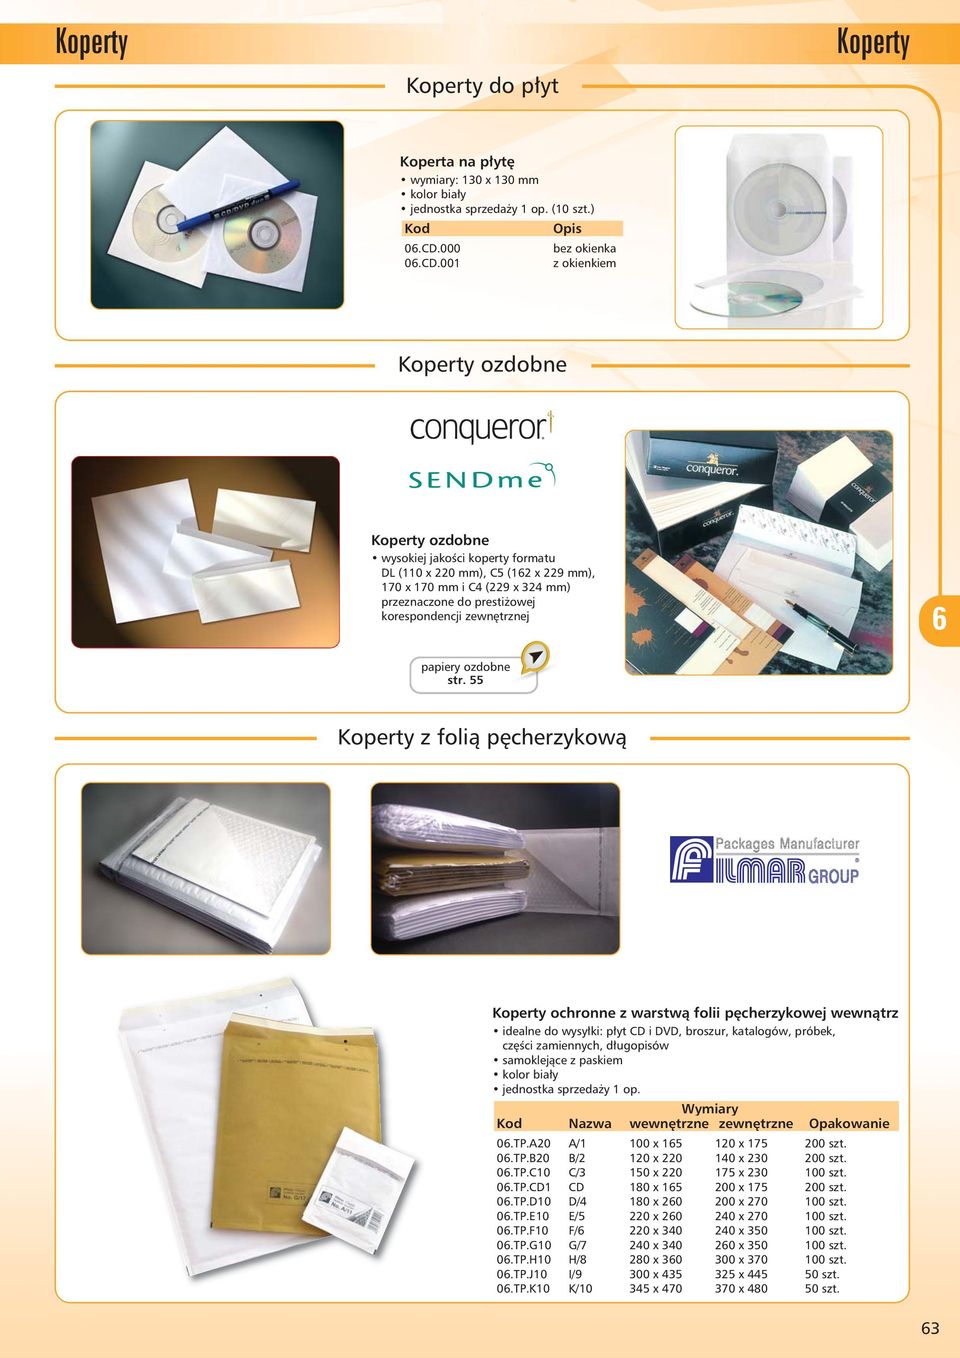 001 z okienkiem ozdobne ozdobne wysokiej jakości koperty formatu DL (110 x 220 mm), C5 (12 x 229 mm), 170 x 170 mm i C4 (229 x 324 mm) przeznaczone do prestiżowej korespondencji zewnętrznej papiery